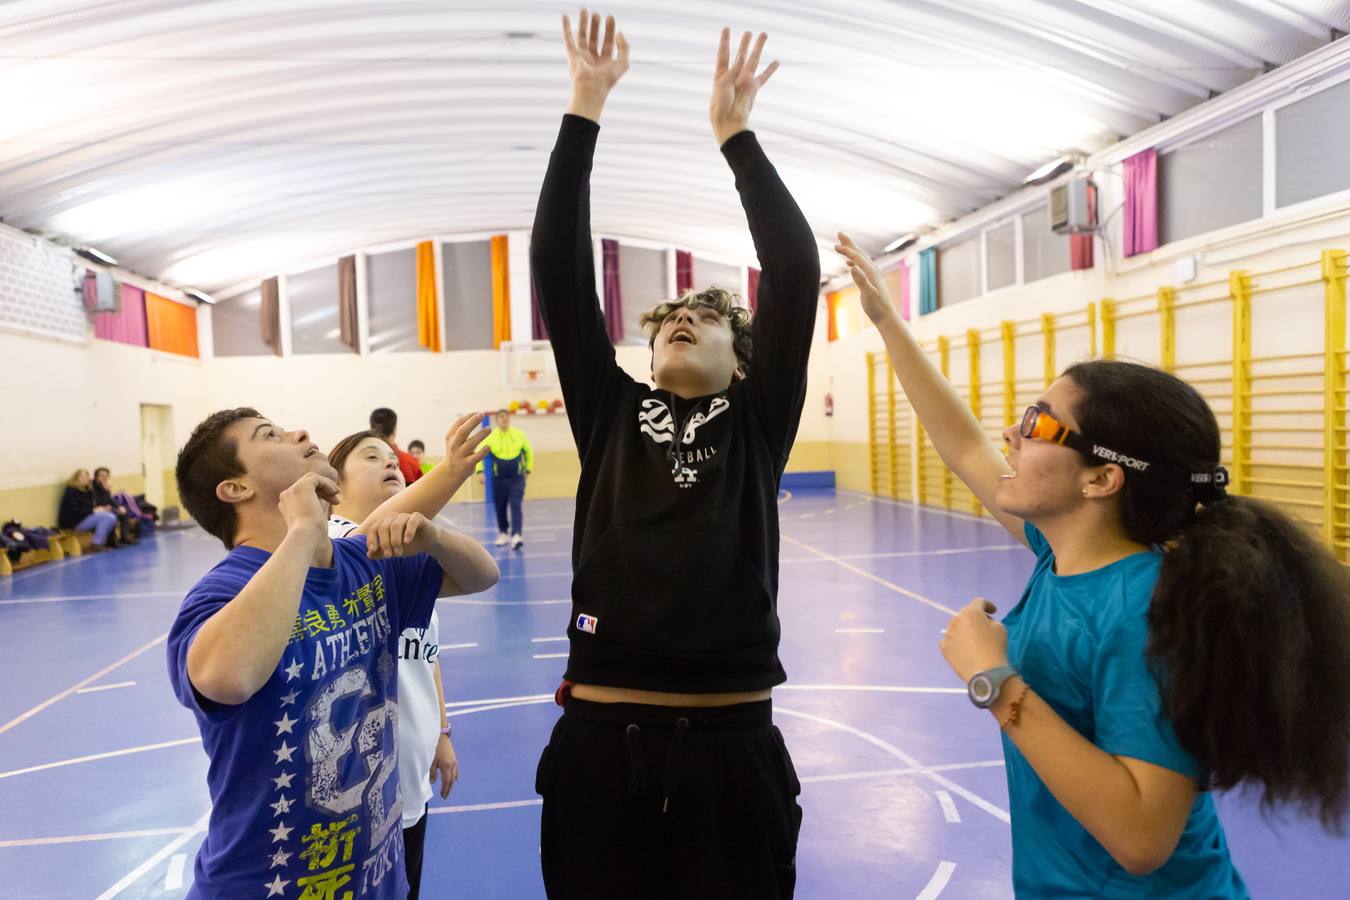 El Basket Down Rioja cuenta con dos equipos en los que se mezclan jugadores con y sin discapacidad